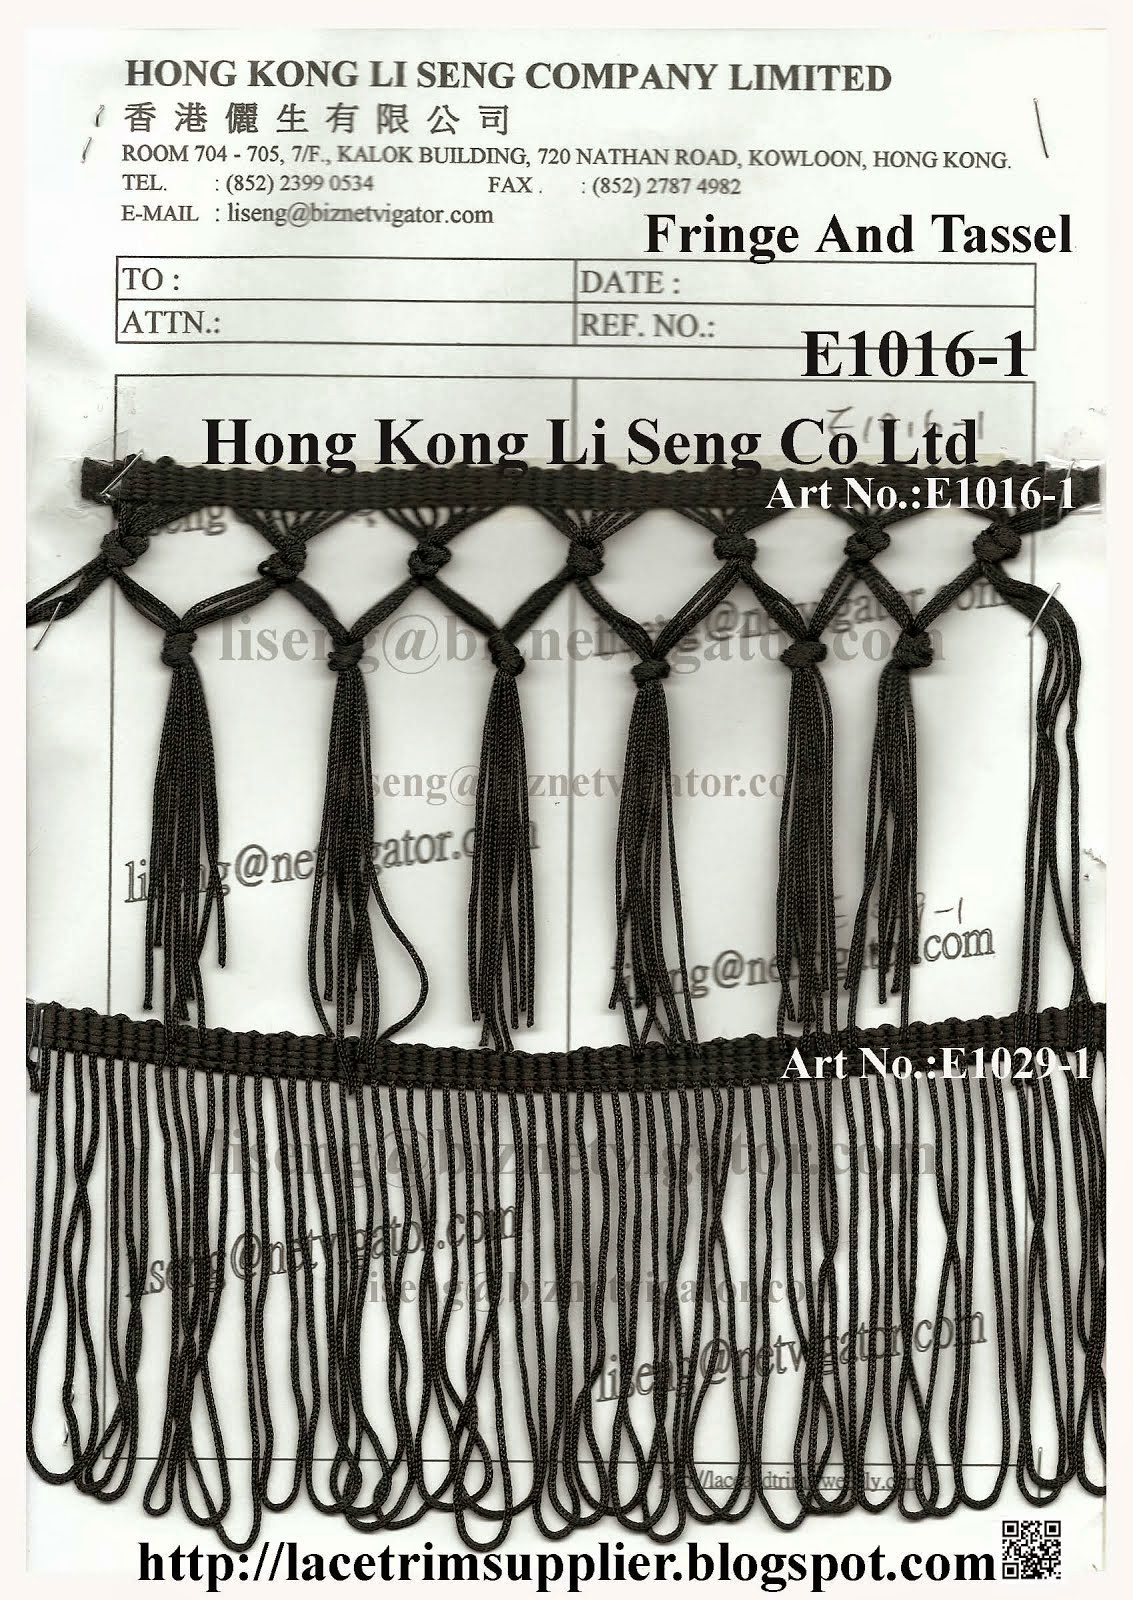 Fringe and Tassel Manufacturer Wholesale Supplier - Hong Kong Li Seng Co Ltd